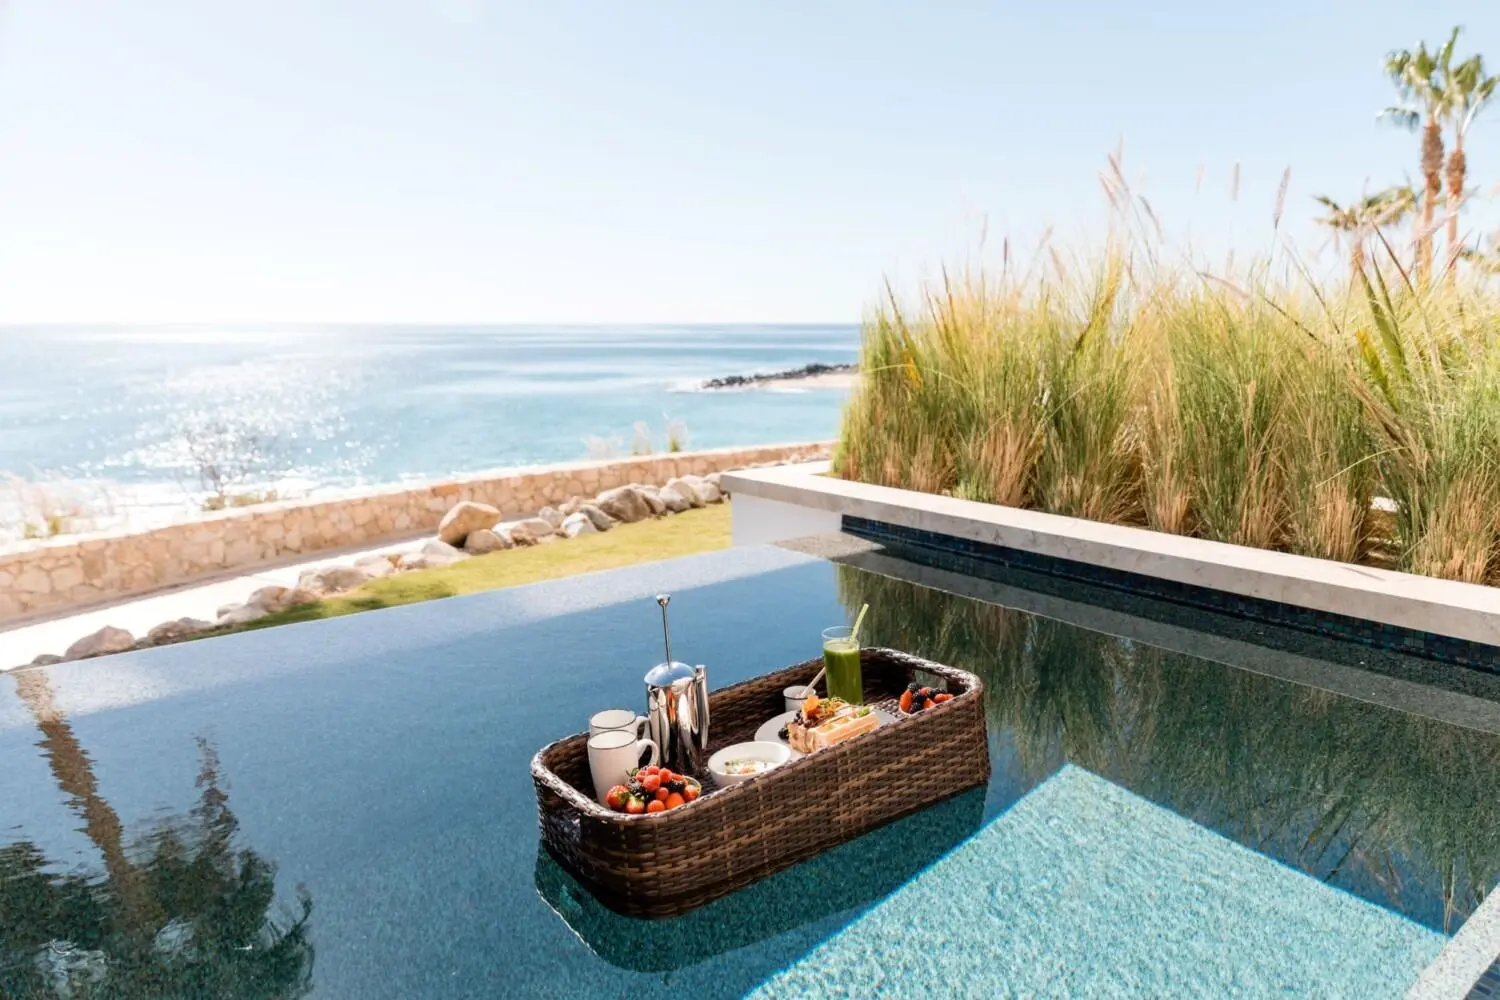 Desayuno flotante en piscina de inmersión privada en Los Cabos, México, de Hilton